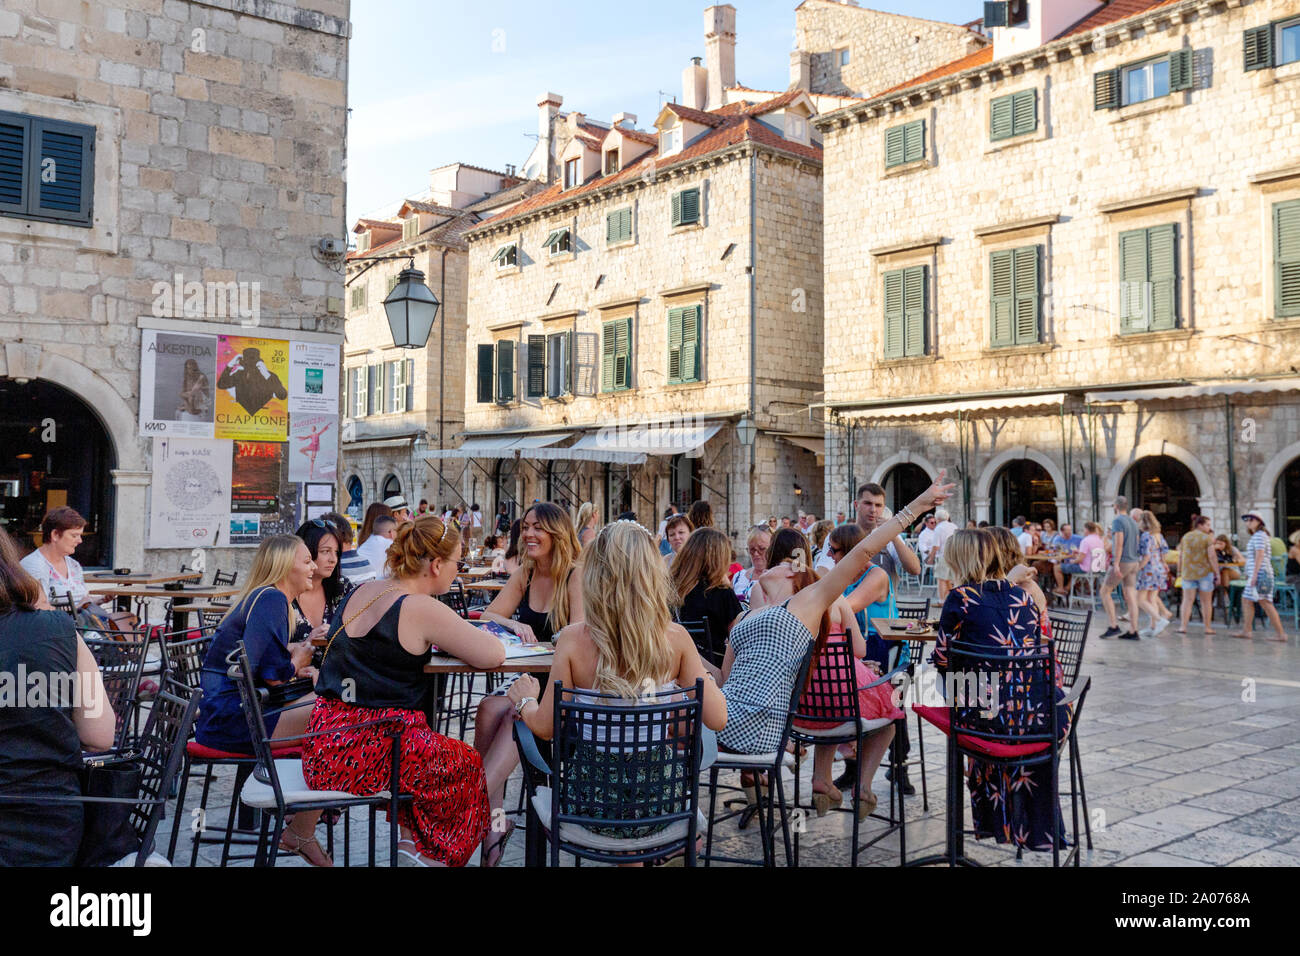 Los turistas de Dubrovnik - grupo de mujeres turistas de vacaciones en una cafetería en Stradun, la calle principal, el casco antiguo de Dubrovnik, Dubrovnik Croacia Europa Foto de stock